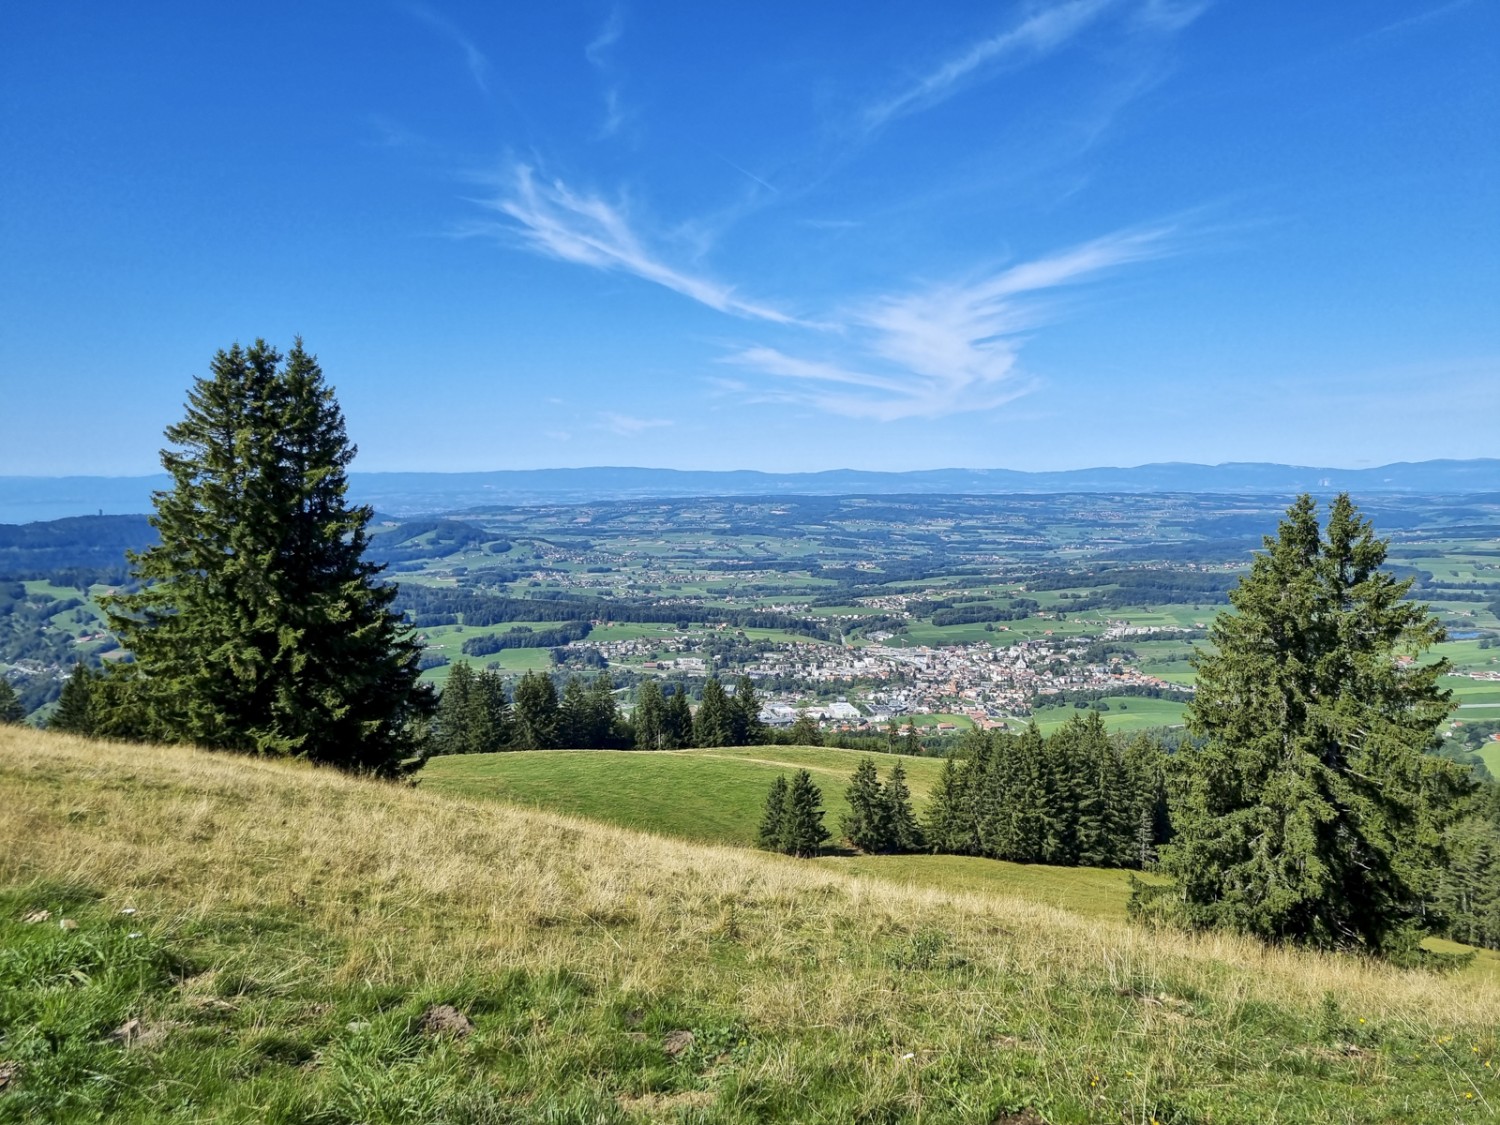 Peu avant le point culminant de la randonnée, vue panoramique sur la région située entre le lac de Neuchâtel et le Léman. Photo: Nathalie Stöckli